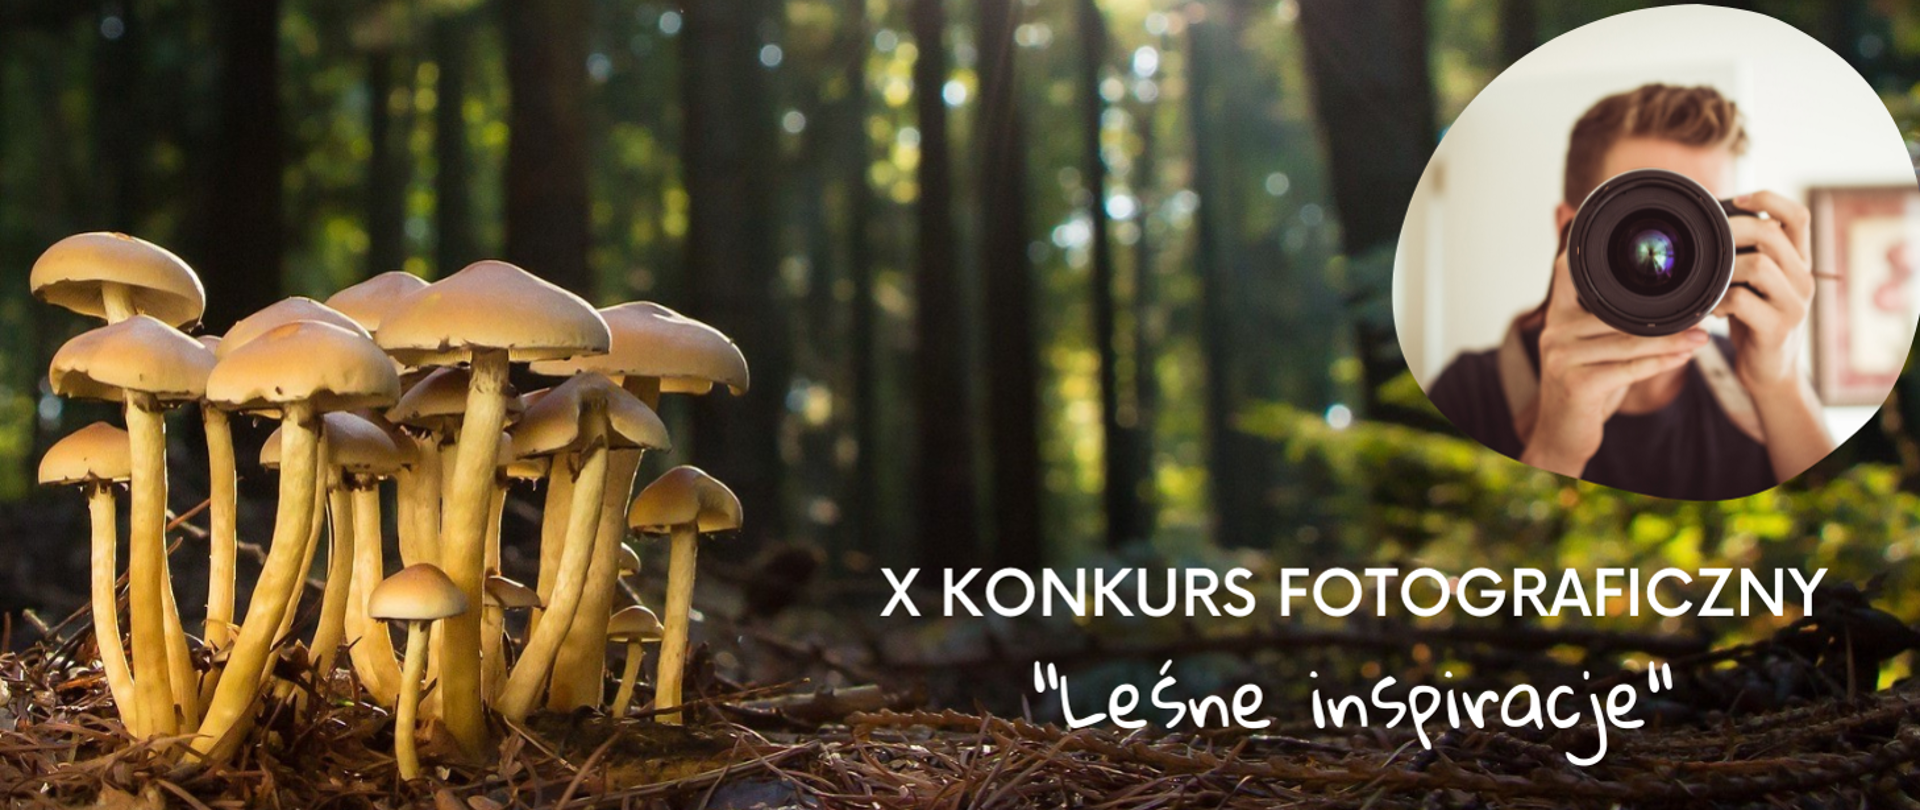 Zdjęcie przedstawiające grupę żółtych grzybów. Obok napis informujący o przedsięwzięciu: X KONKURS FOTOGRAFICZNY "Leśne inspiracje". W prawym górnym rogu zdjęcia mężczyzna wykonujący zdjęcie aparatem z obiektywem